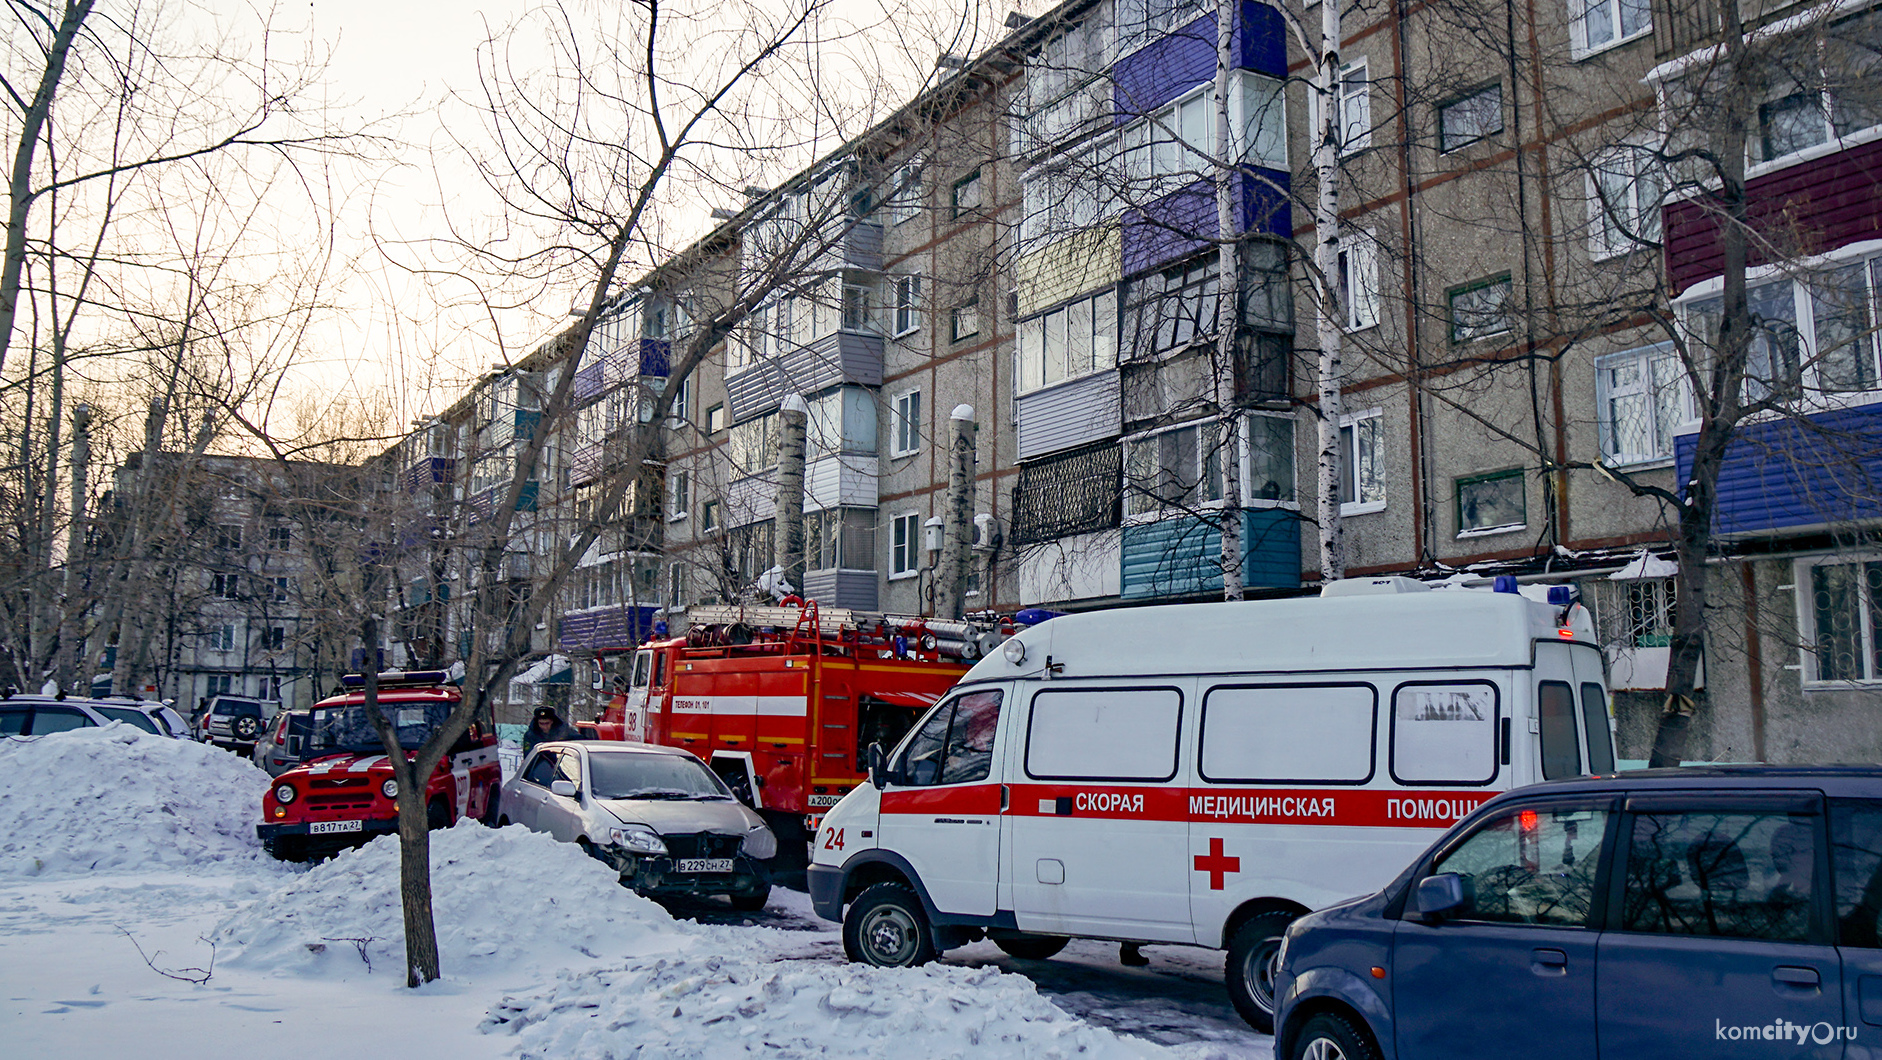 В Комсомольске-на-Амуре в результате пожара в многоэтажке пострадал человек